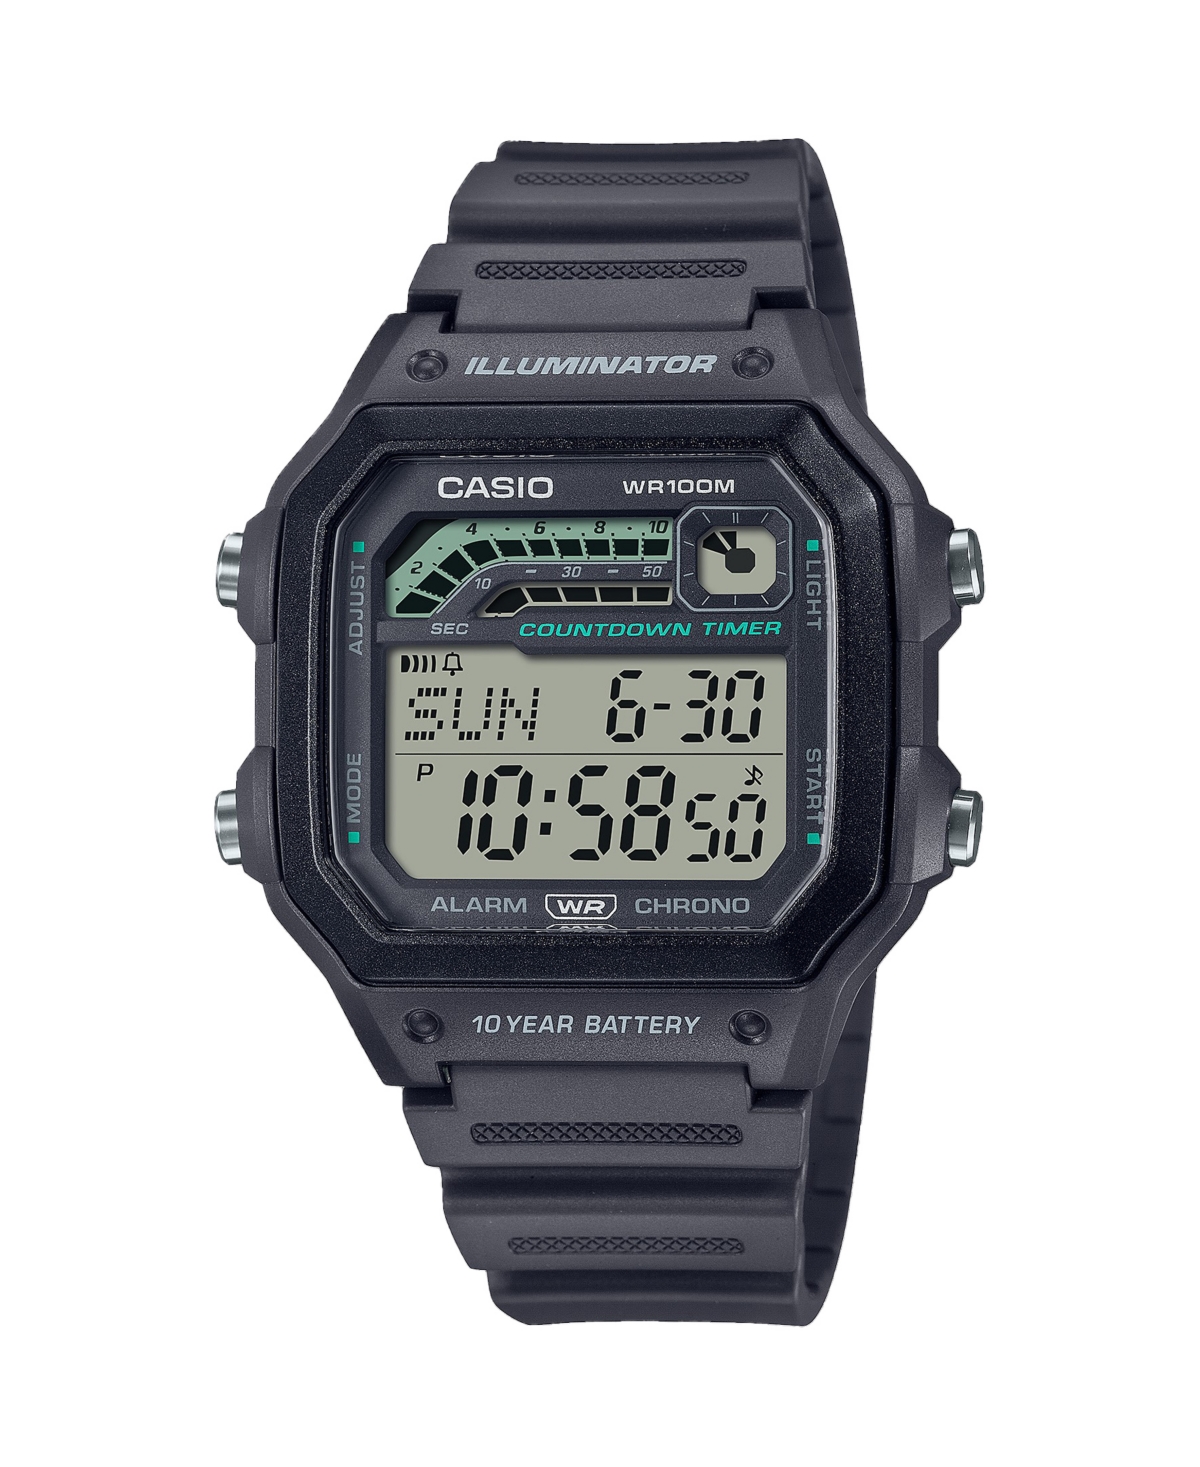 Men's Digital Gray Resin Watch 42.1mm, WS1600H-8AV - Gray